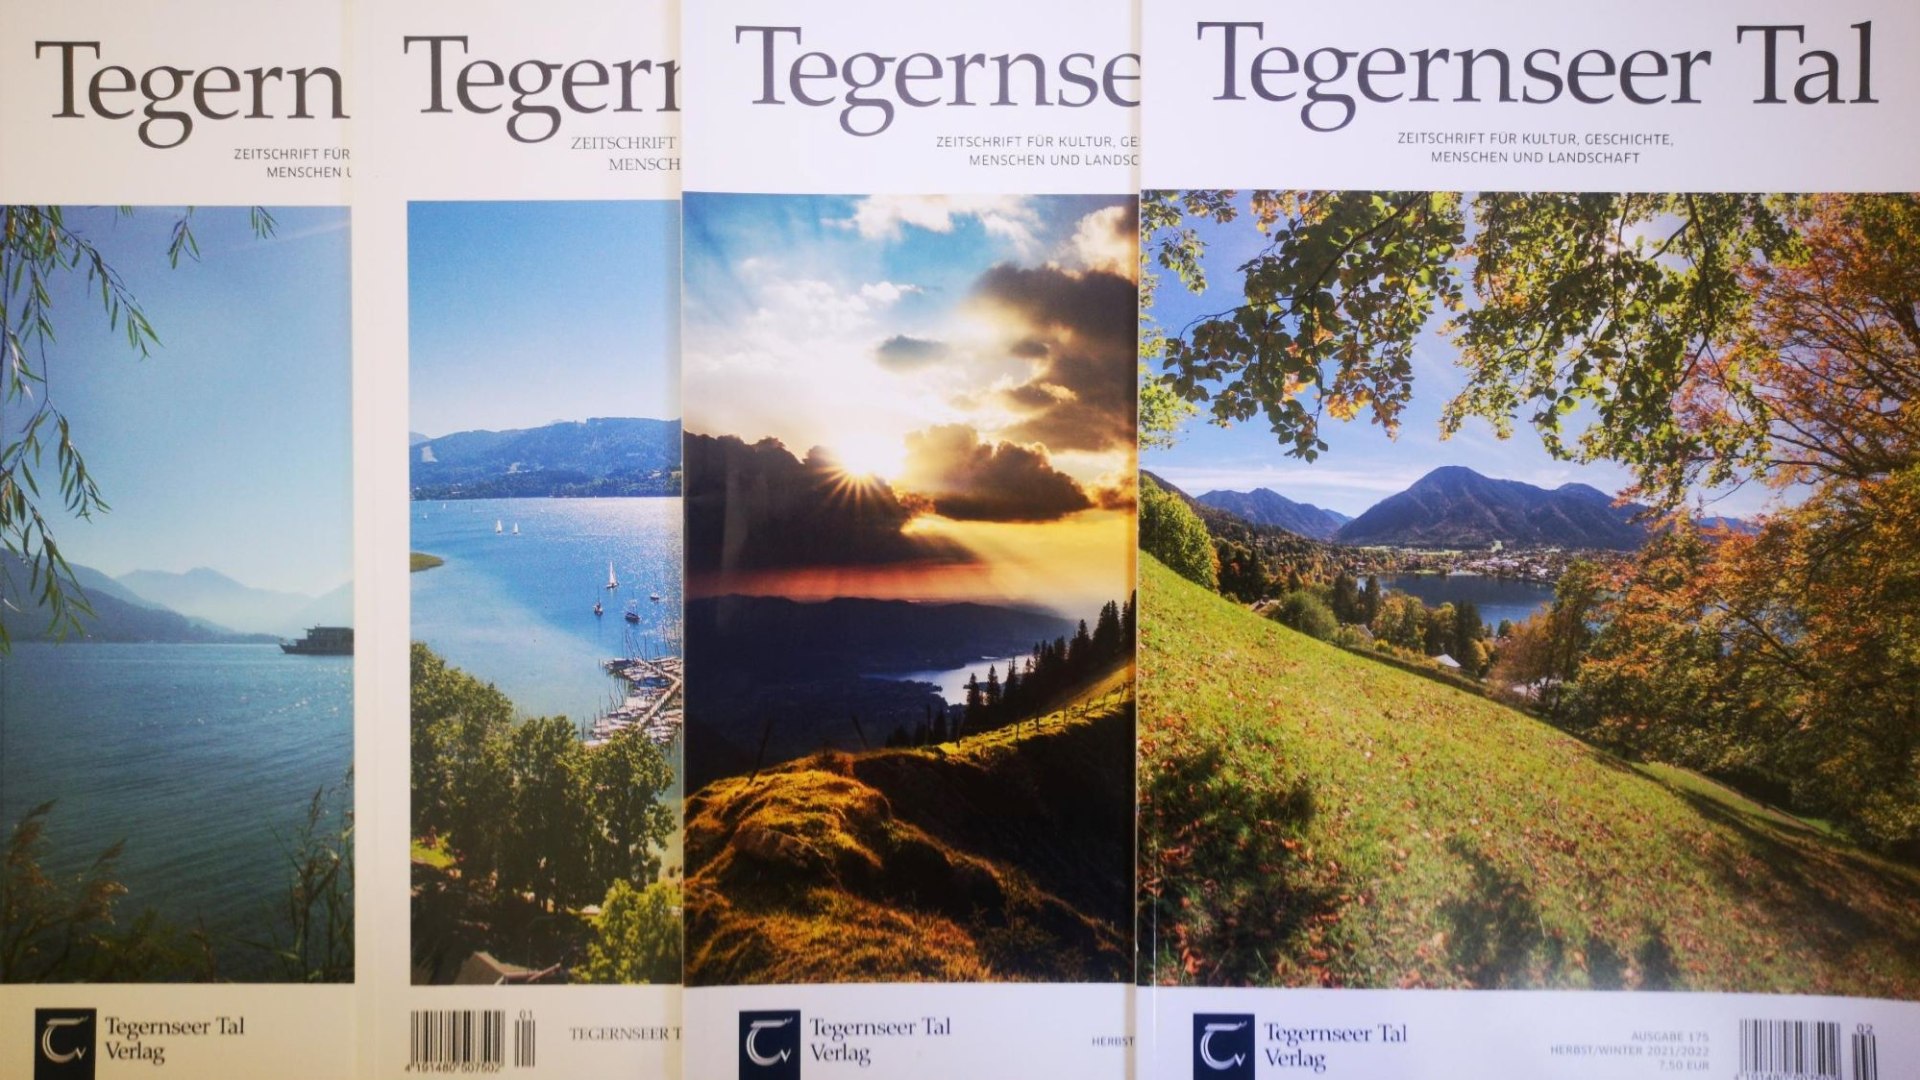 Tegernseer Tal Verlag 2, © Tegernseer Tal Verlag